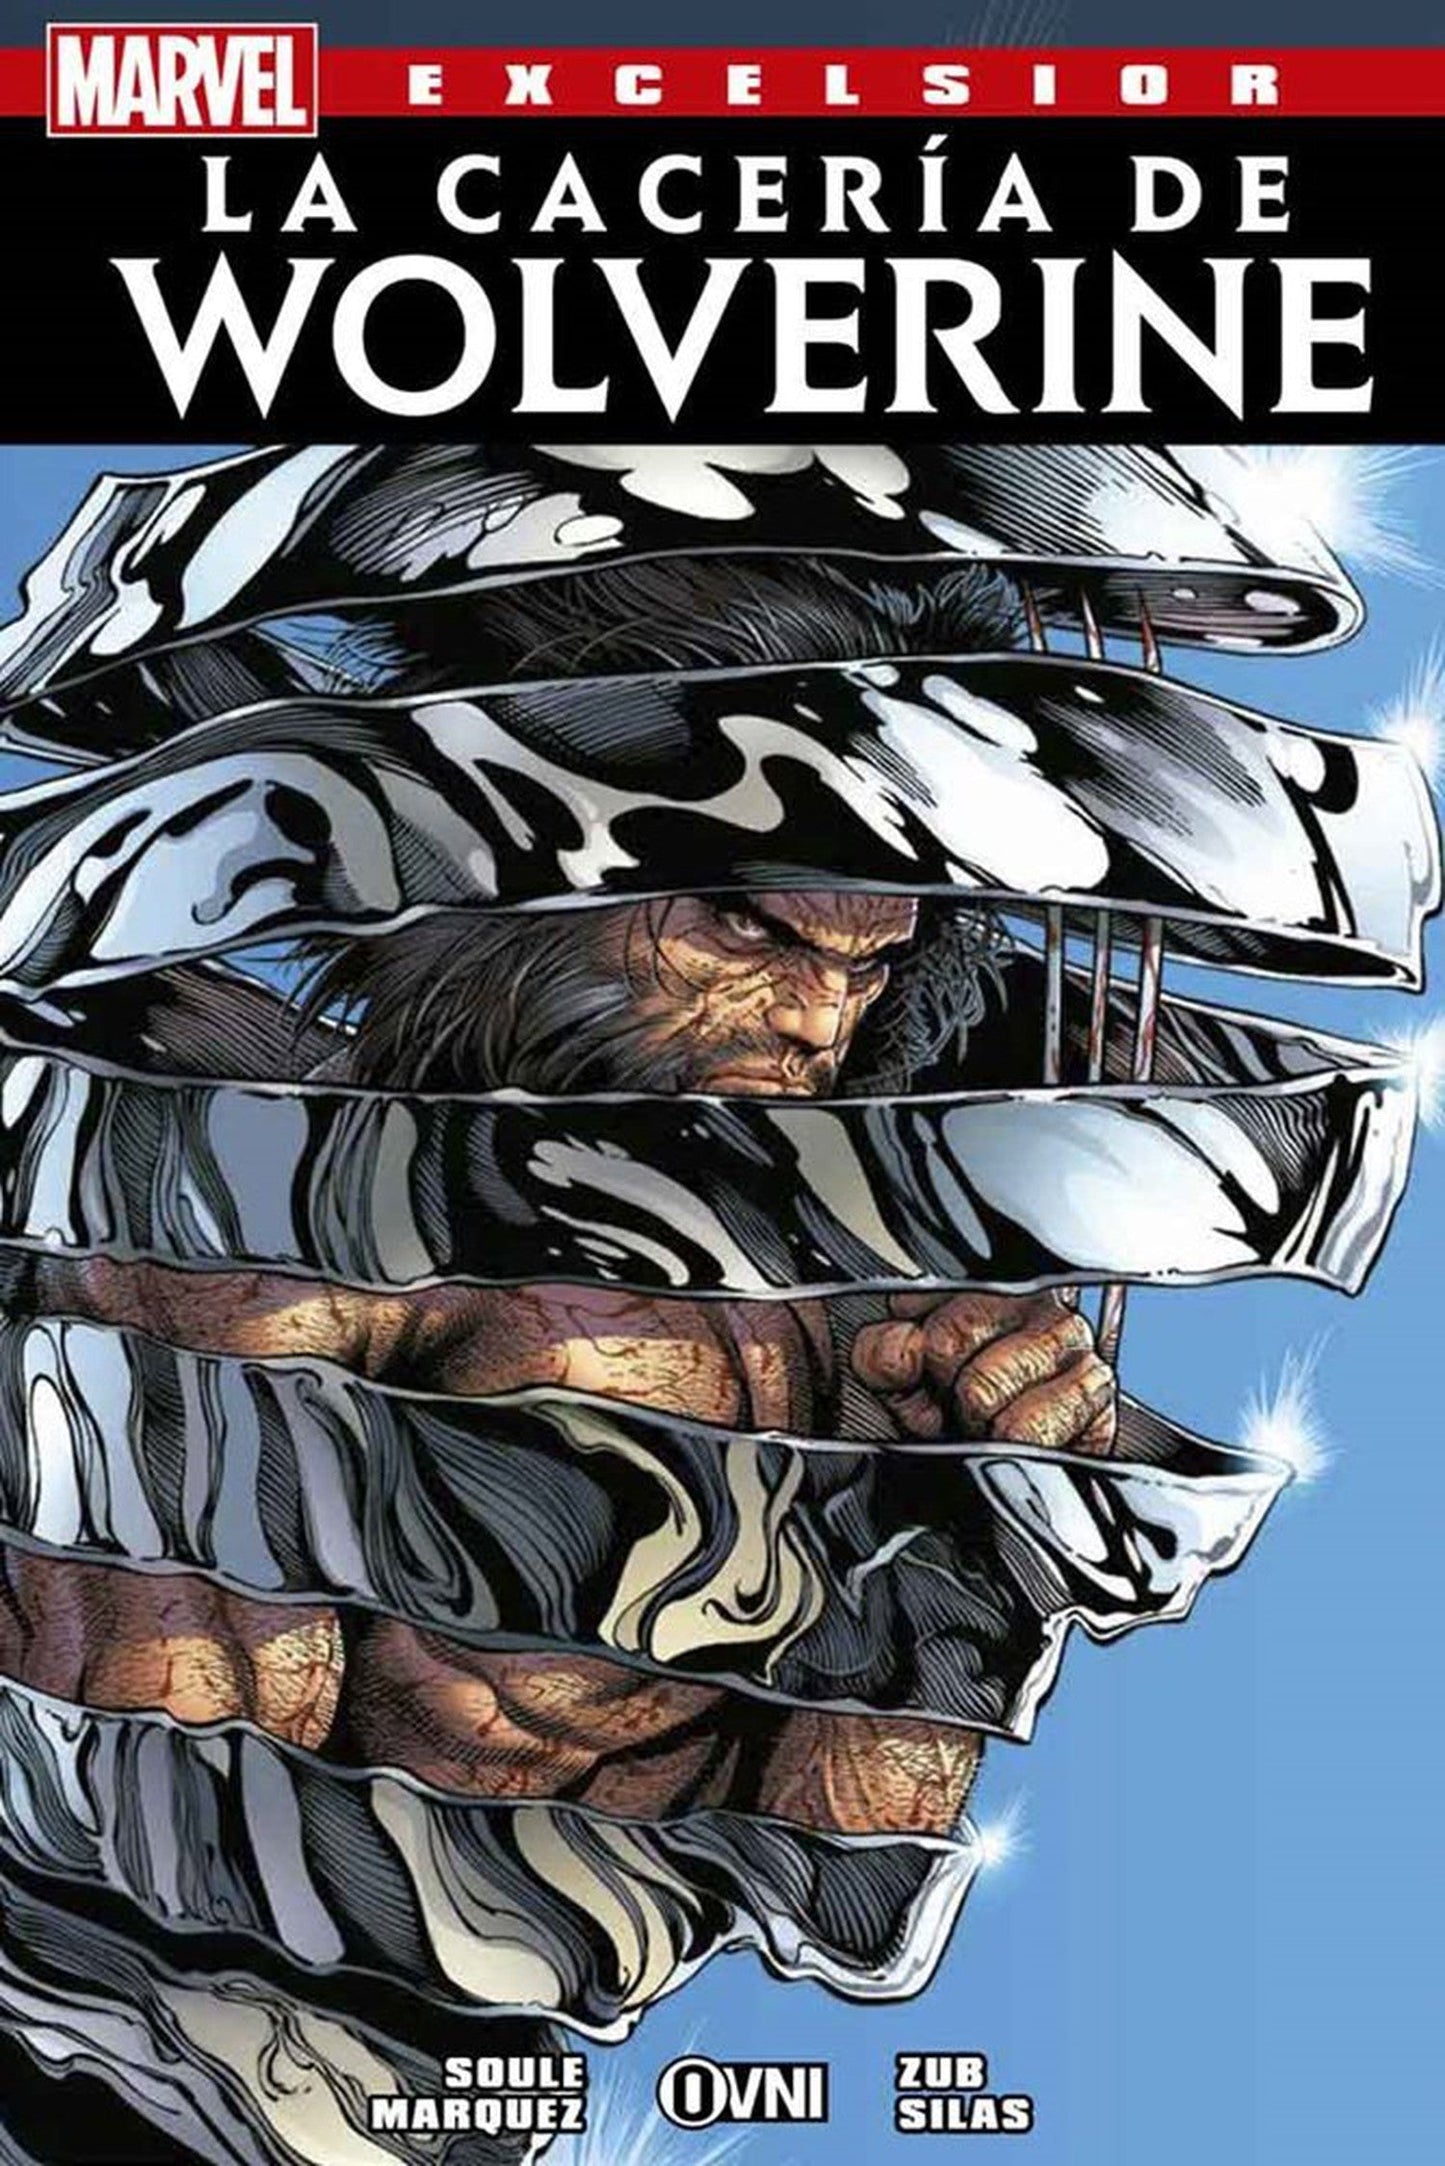 La Cacería de Wolverine OVNI Press ENcuadrocomics